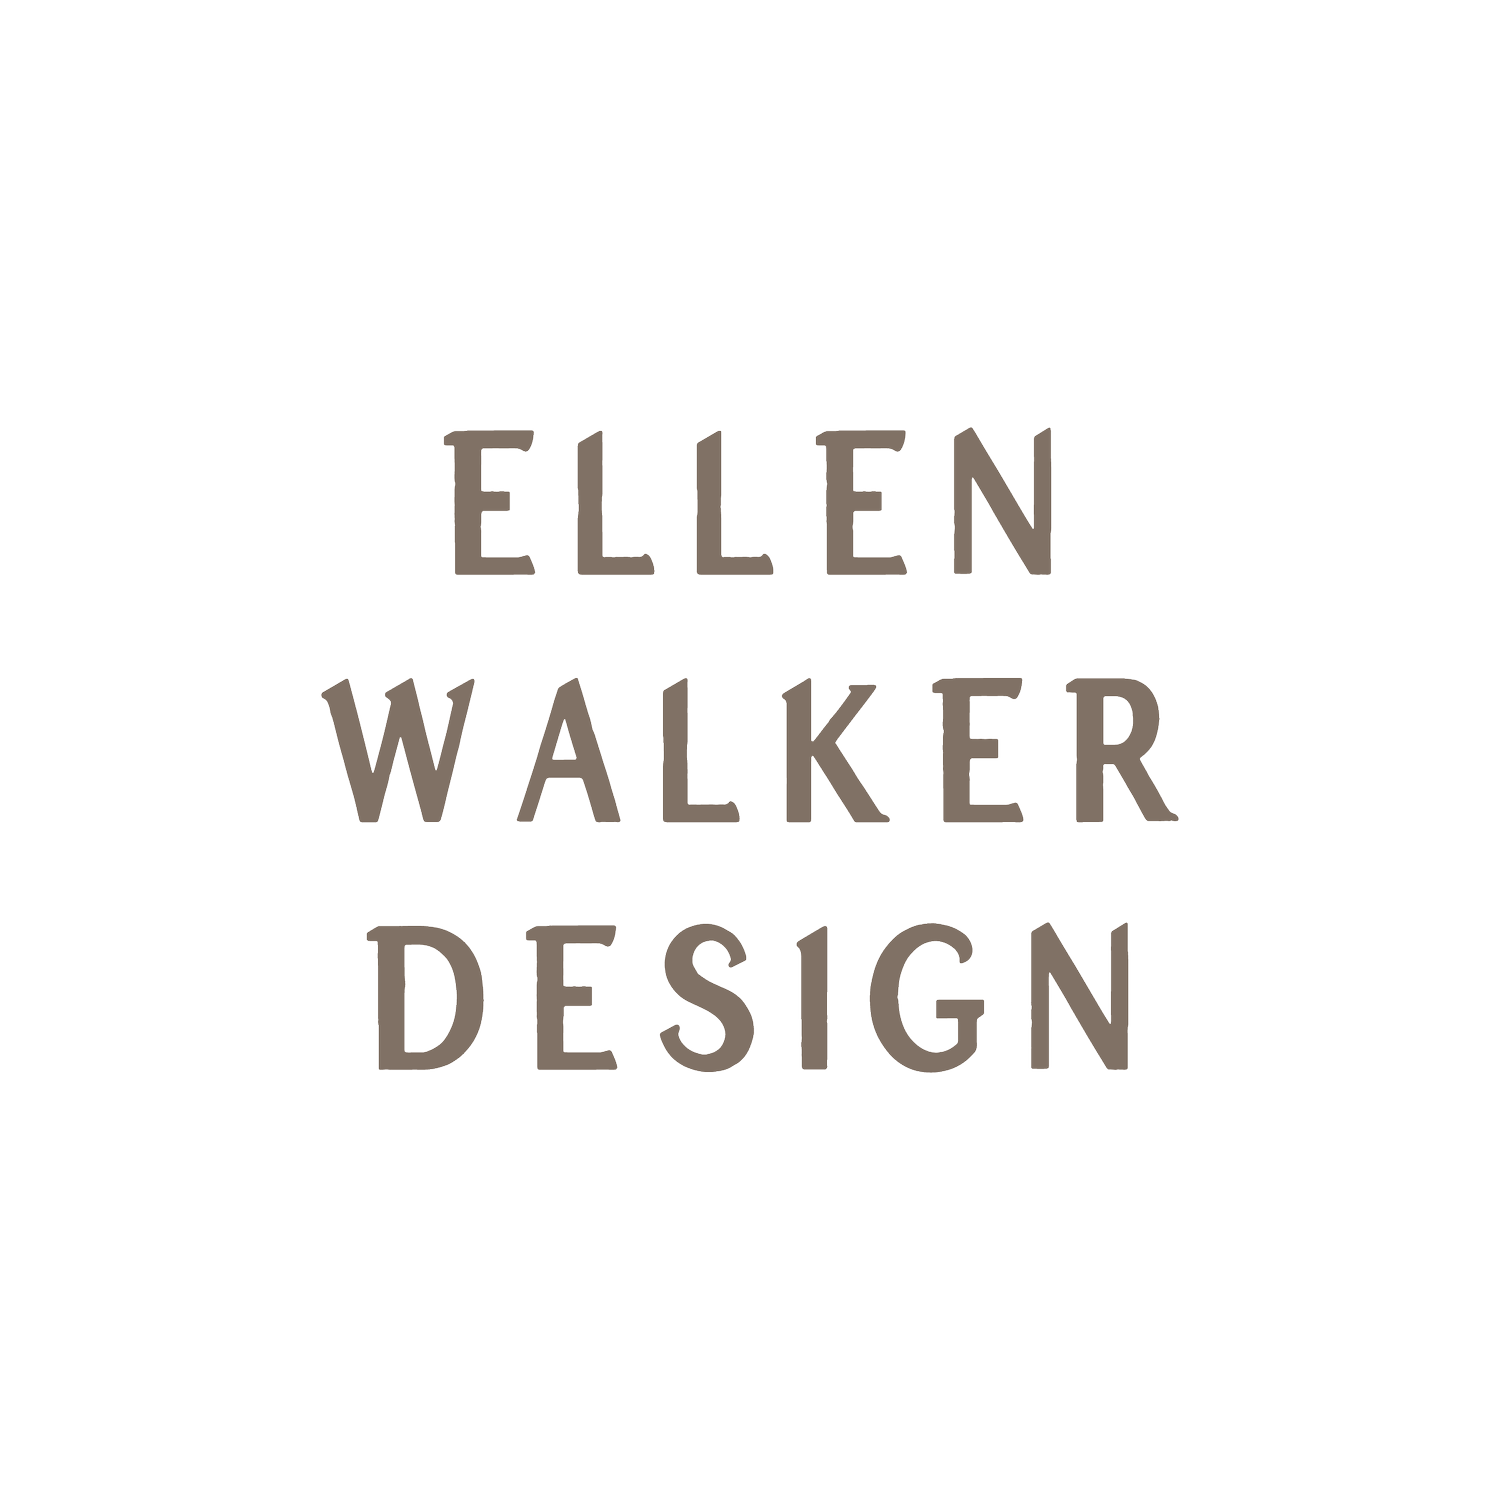 Ellen Walker Design